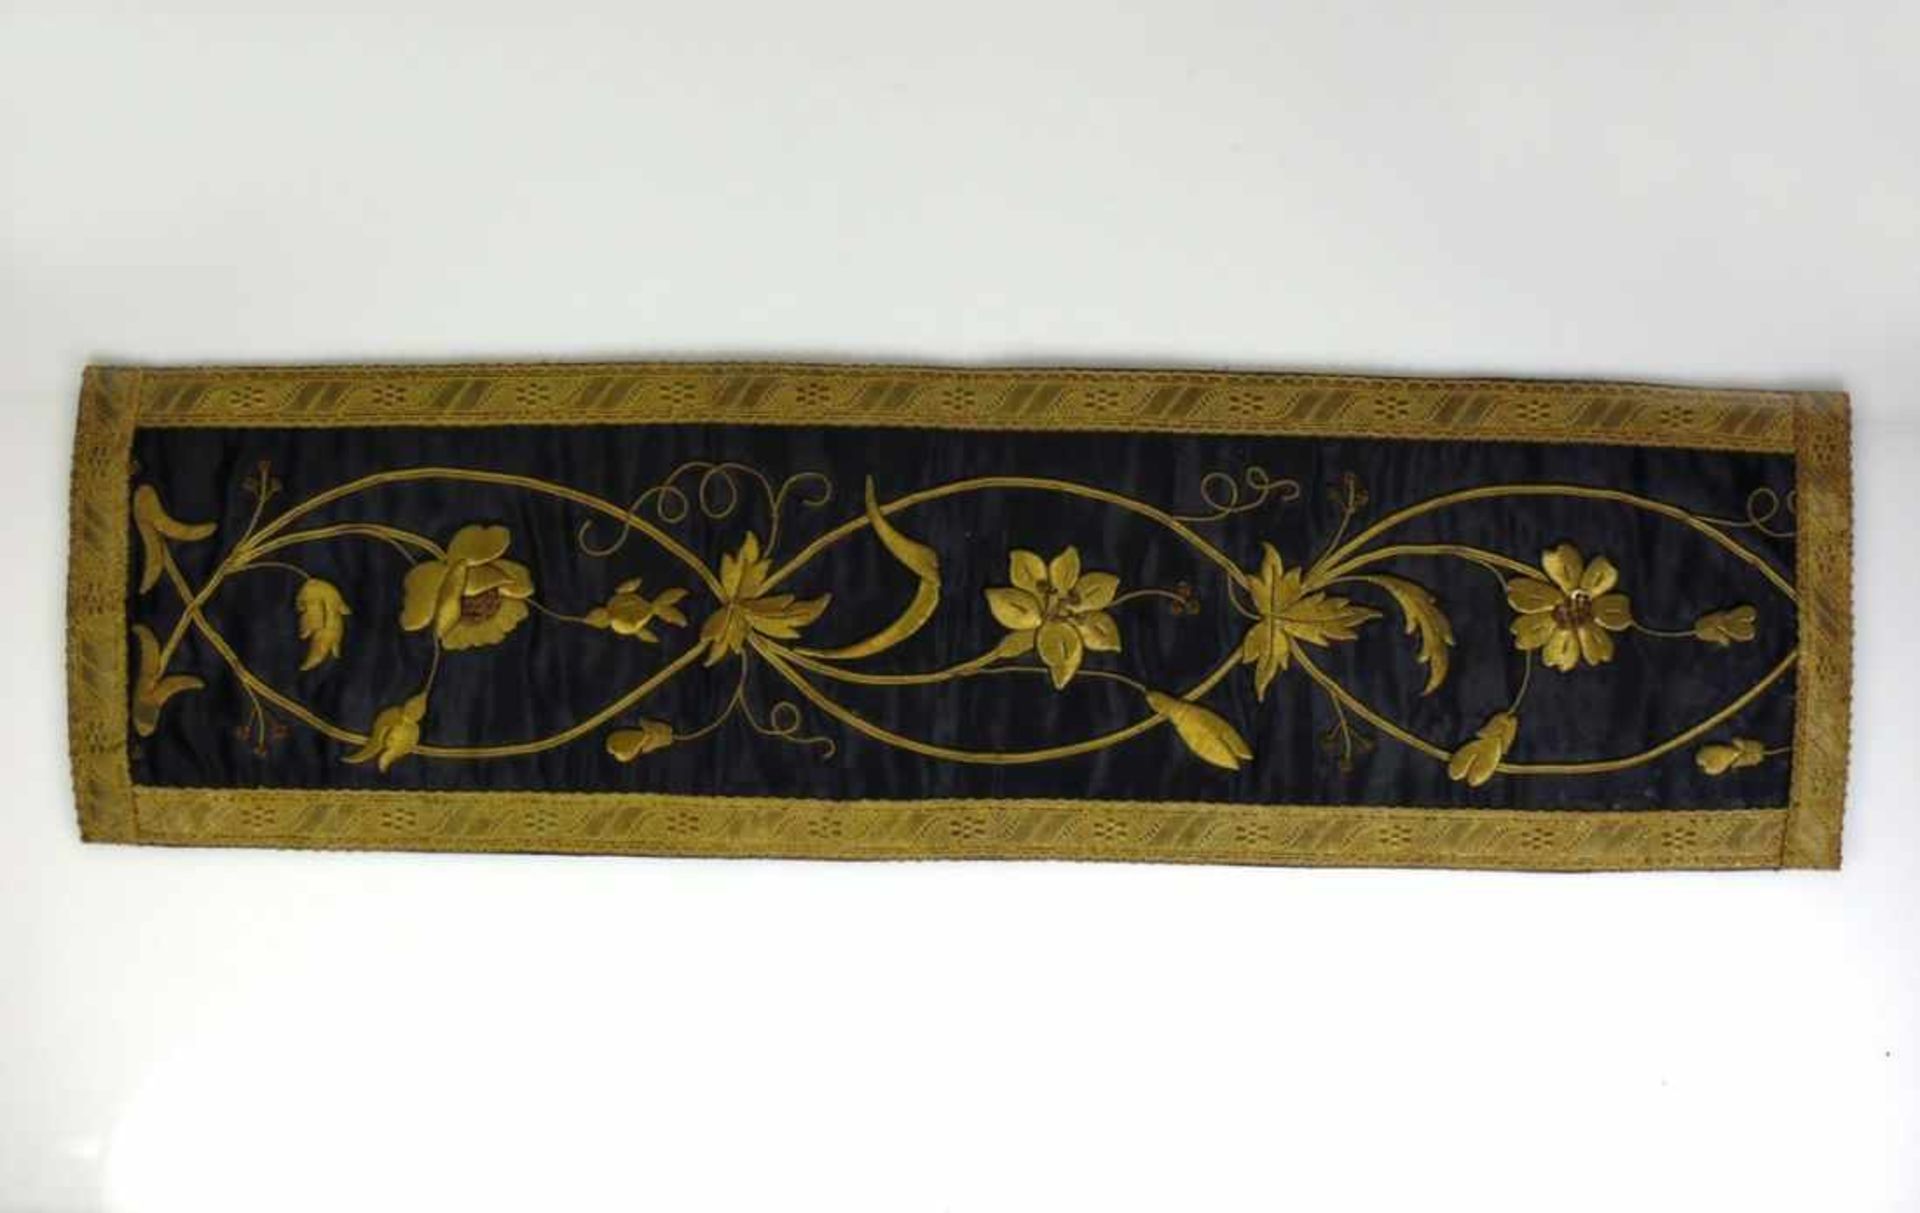 Tischläufer (19.Jh.) auf schwarzer Seide floraler, erhabener Dekor in Goldbrokat; gefasste